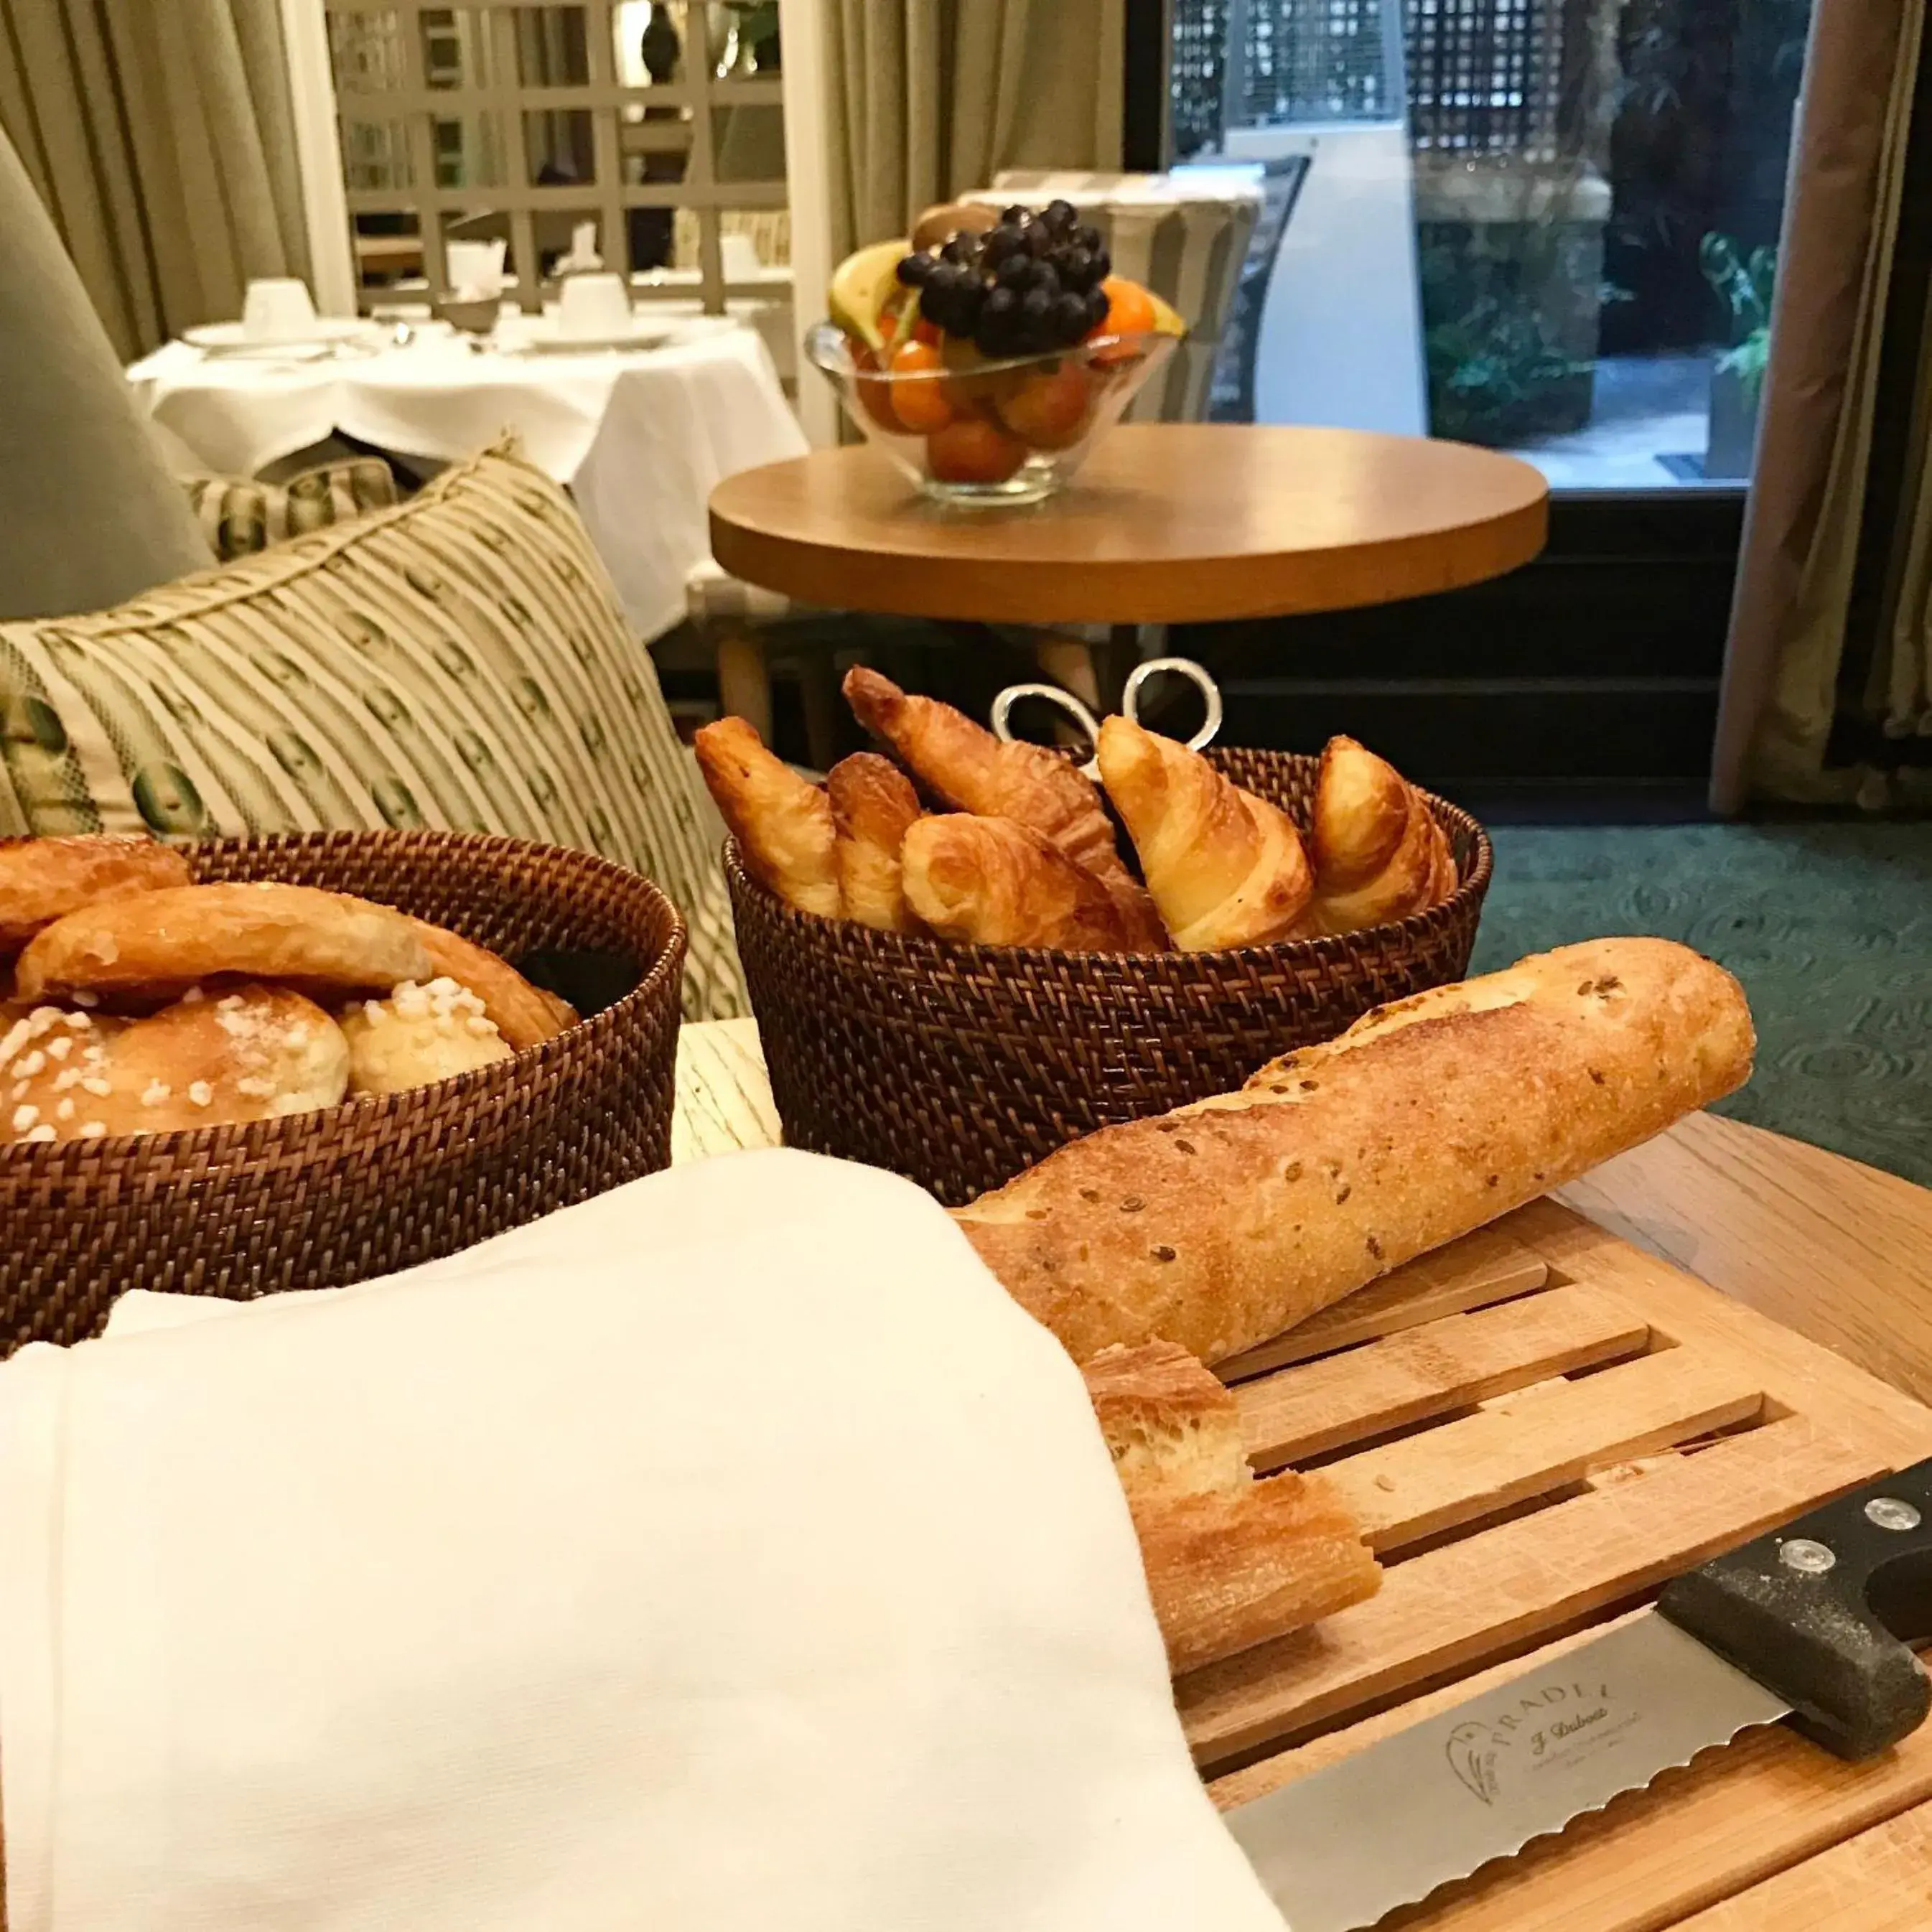 Buffet breakfast in Hôtel Recamier